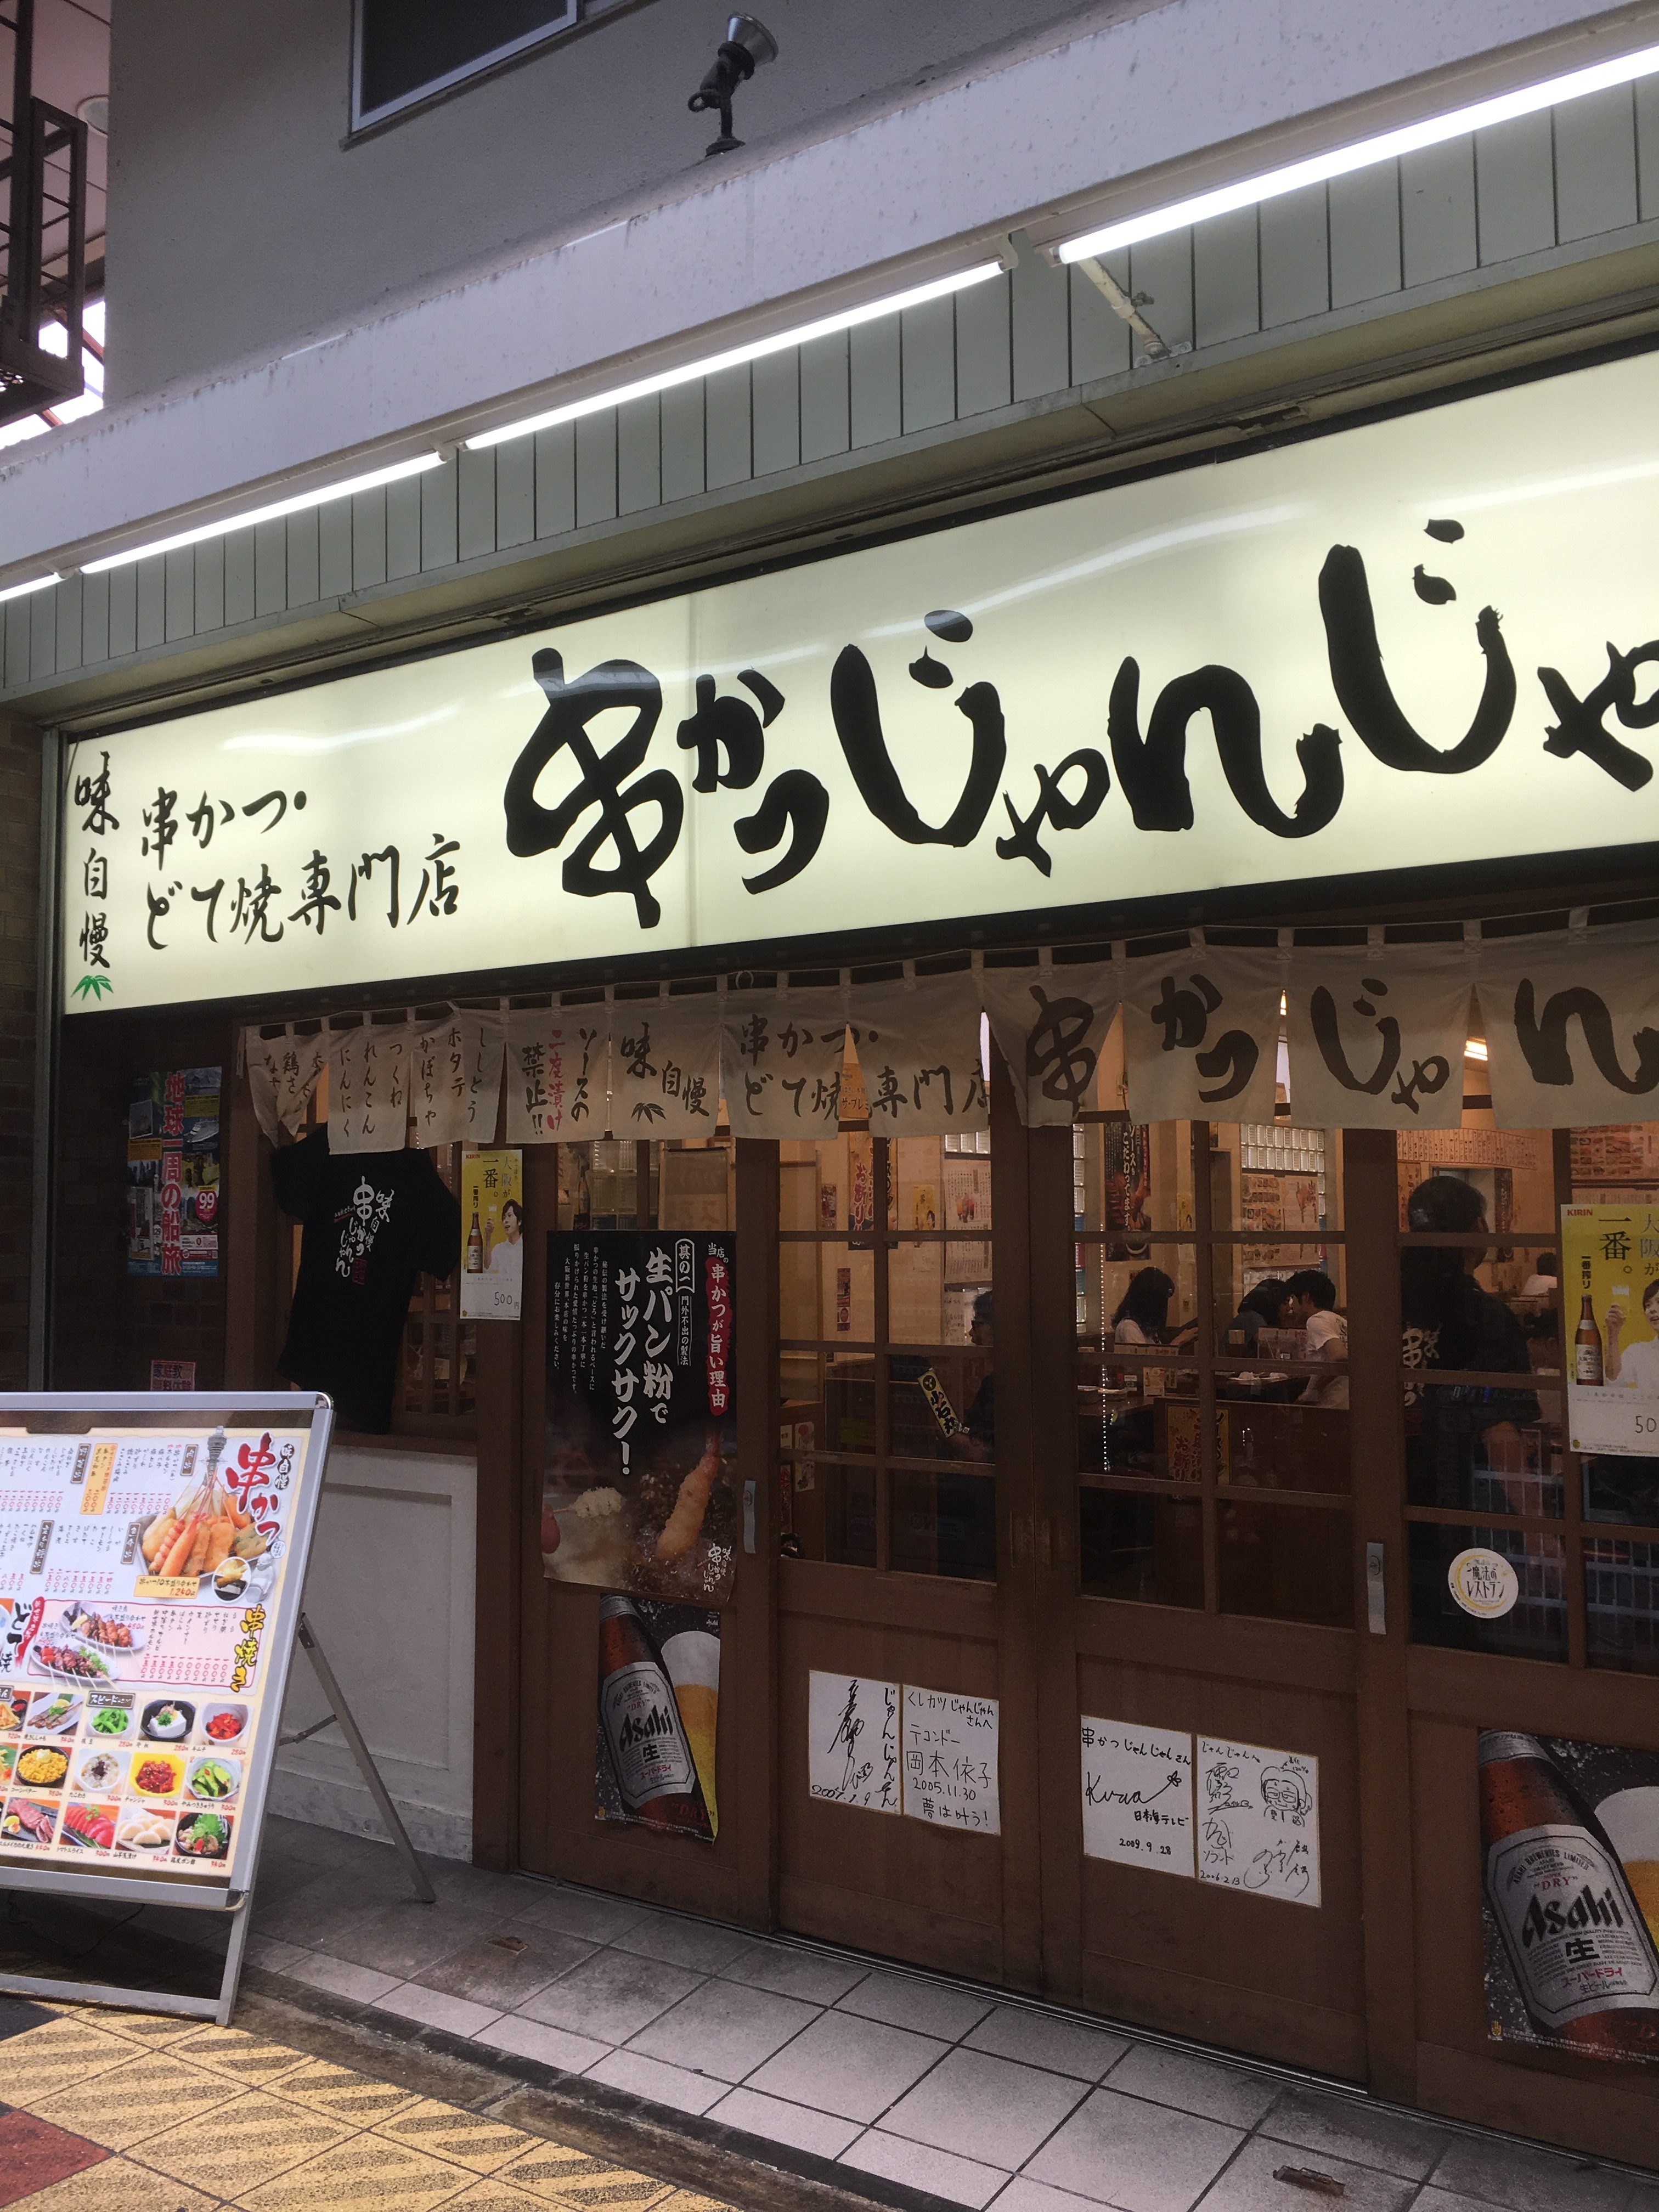 jyan jyan kushikatsu restaurant in Osaka's shinsekai 